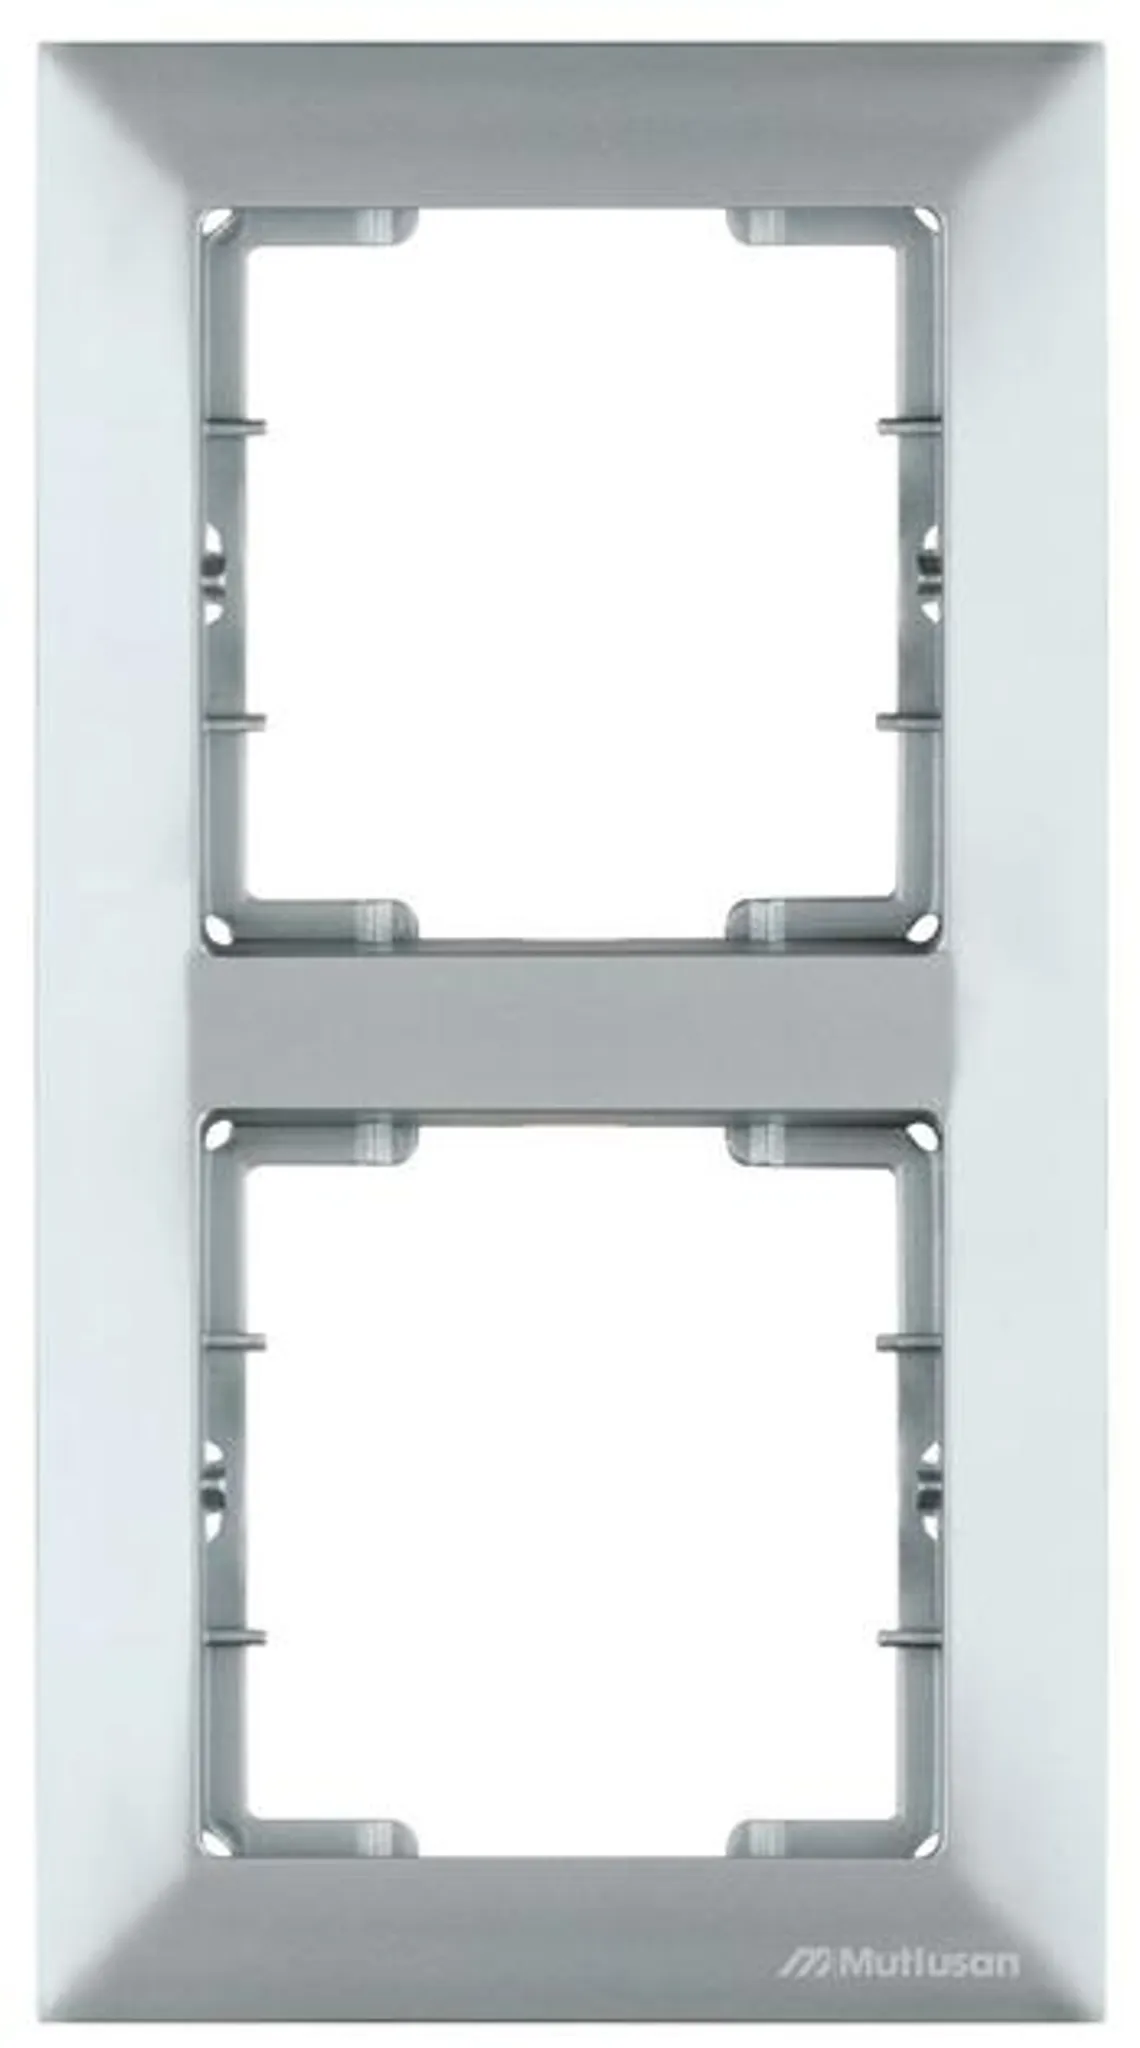 2fach Rahmen Steckdosenrahmen vertikal · Garten & Heimwerken Baumarkt Elektromaterial Steckdosen Mehrfachsteckdosen 